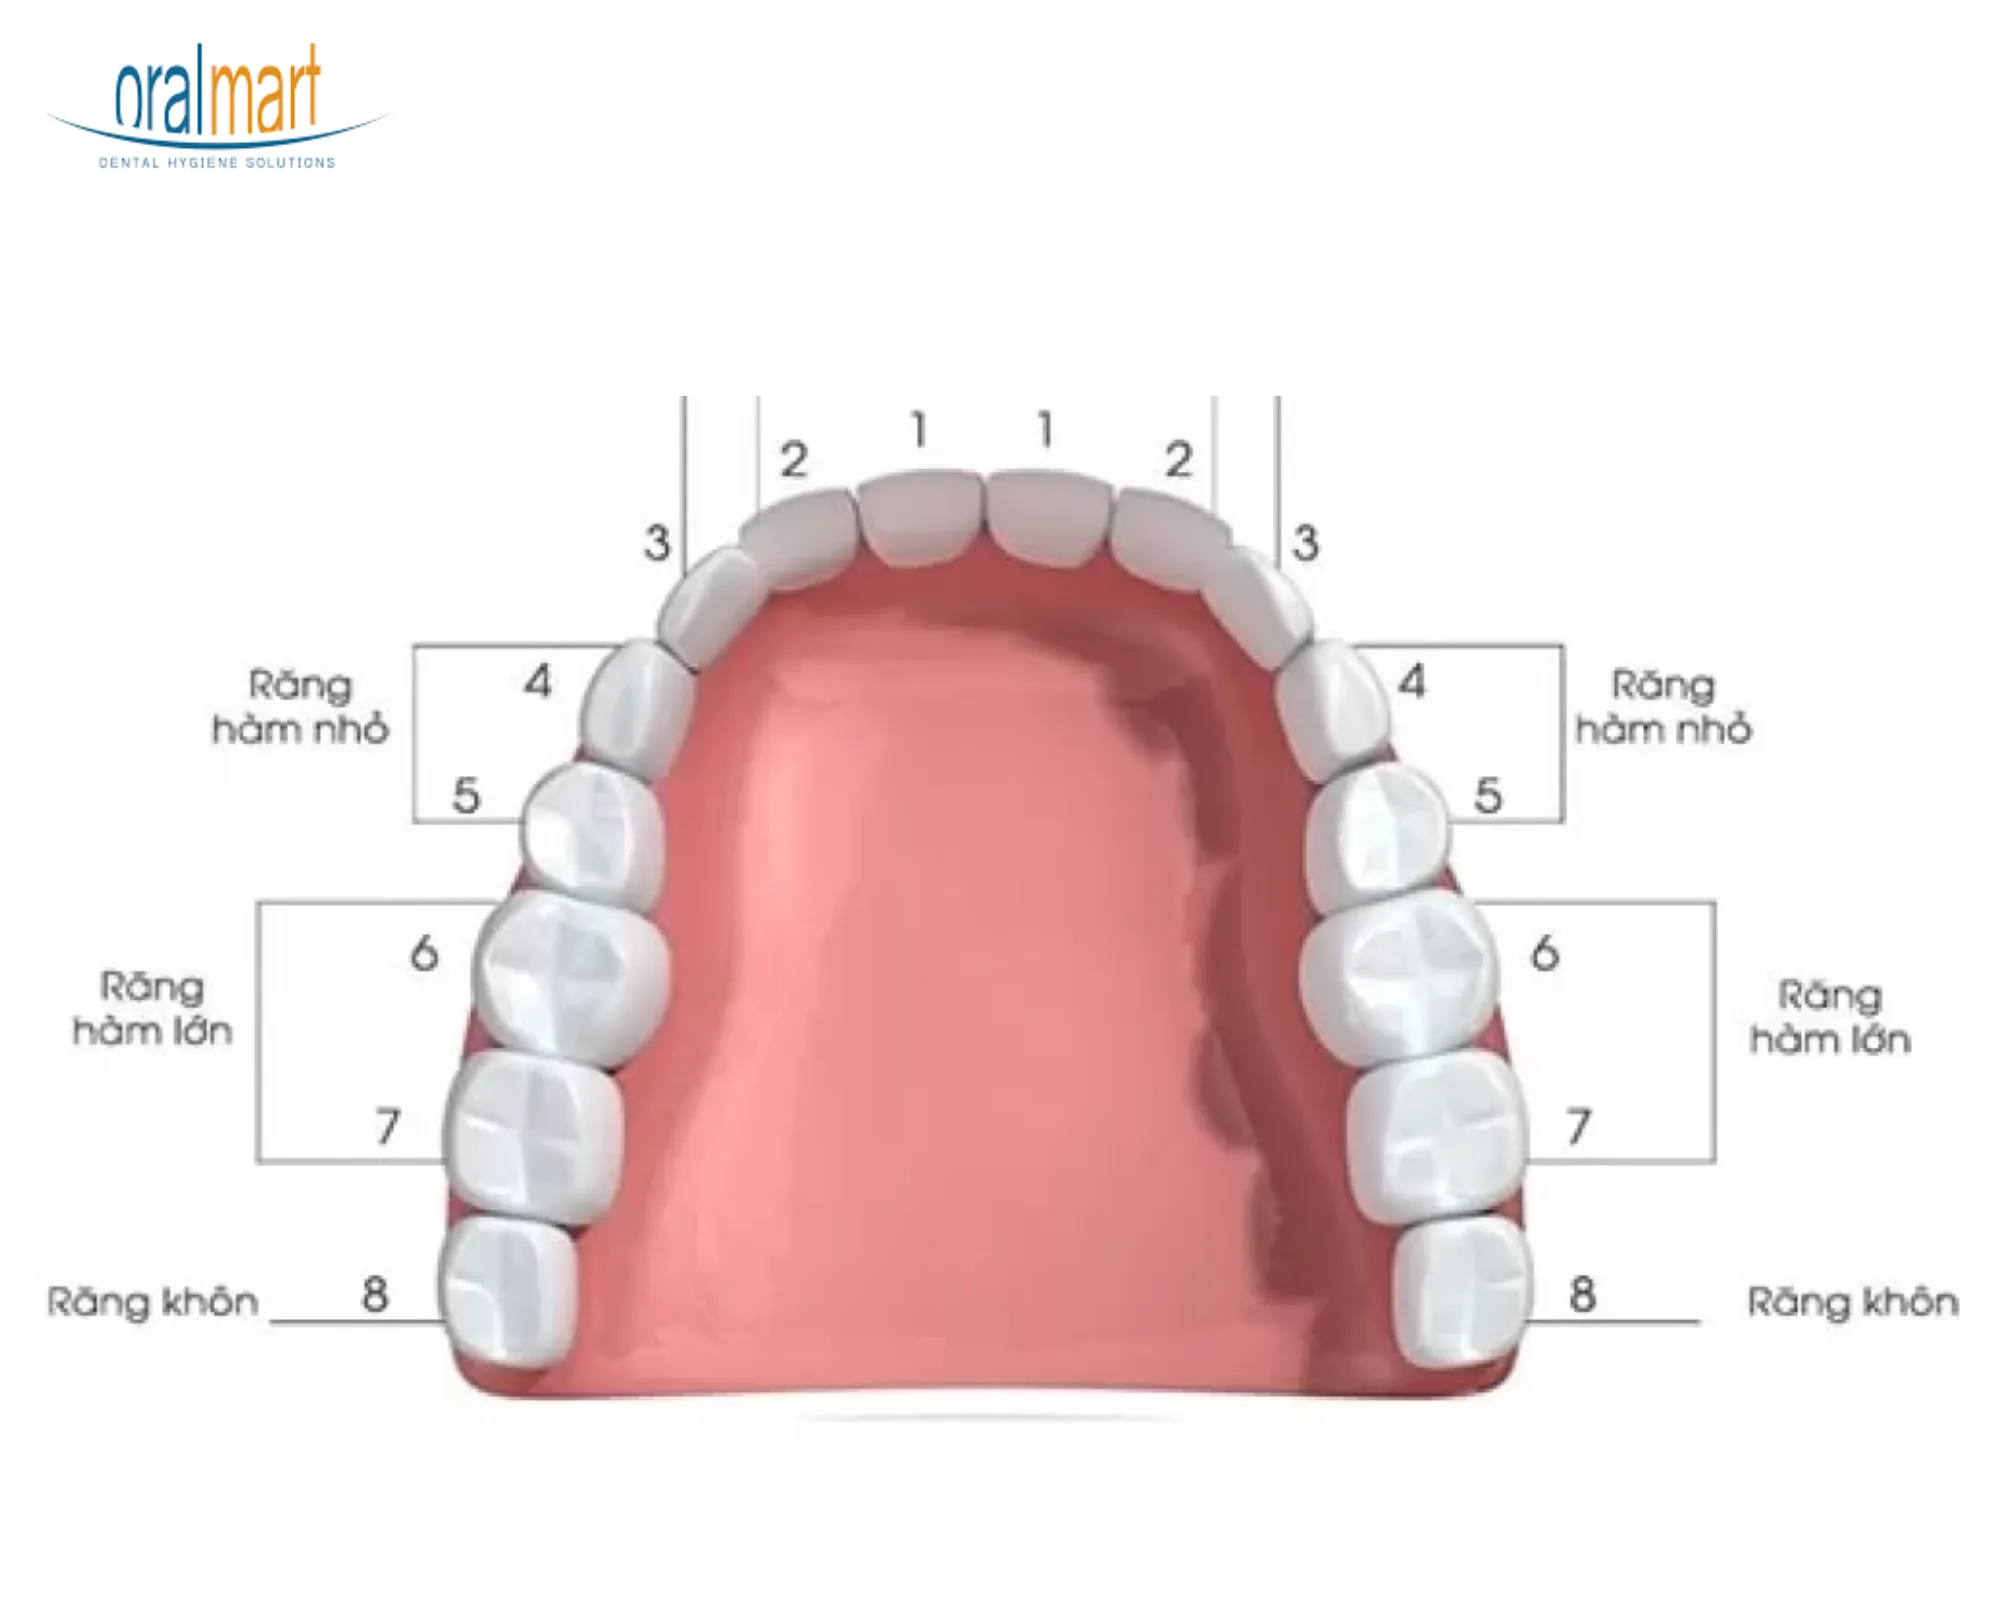 Răng số 8 (còn gọi là răng khôn) chính là răng hàm trong cùng, thường mọc trong độ tuổi từ 17-25